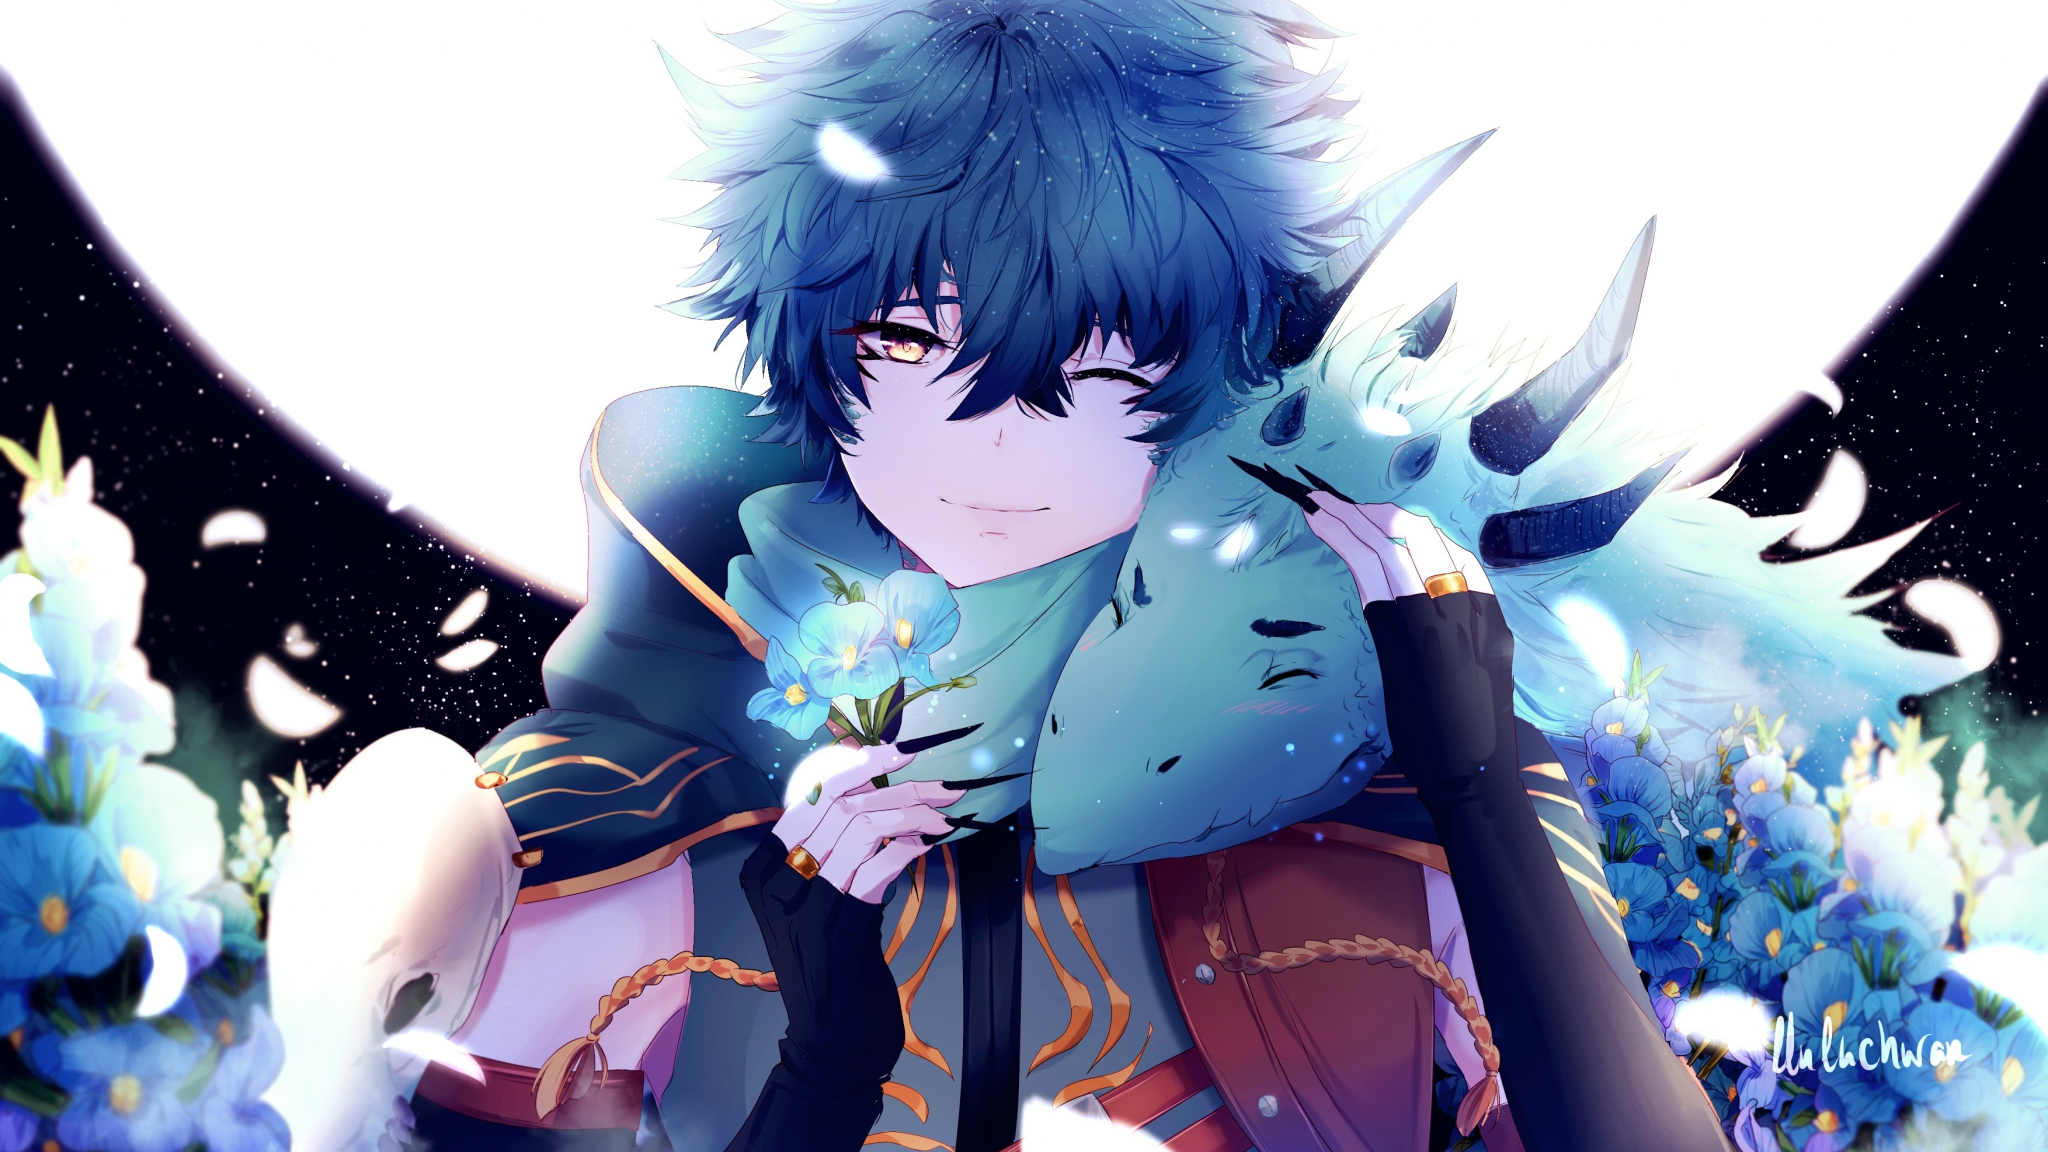 Download 2048x1152 Wallpaper Anime Boy Dragon Blue Flowers